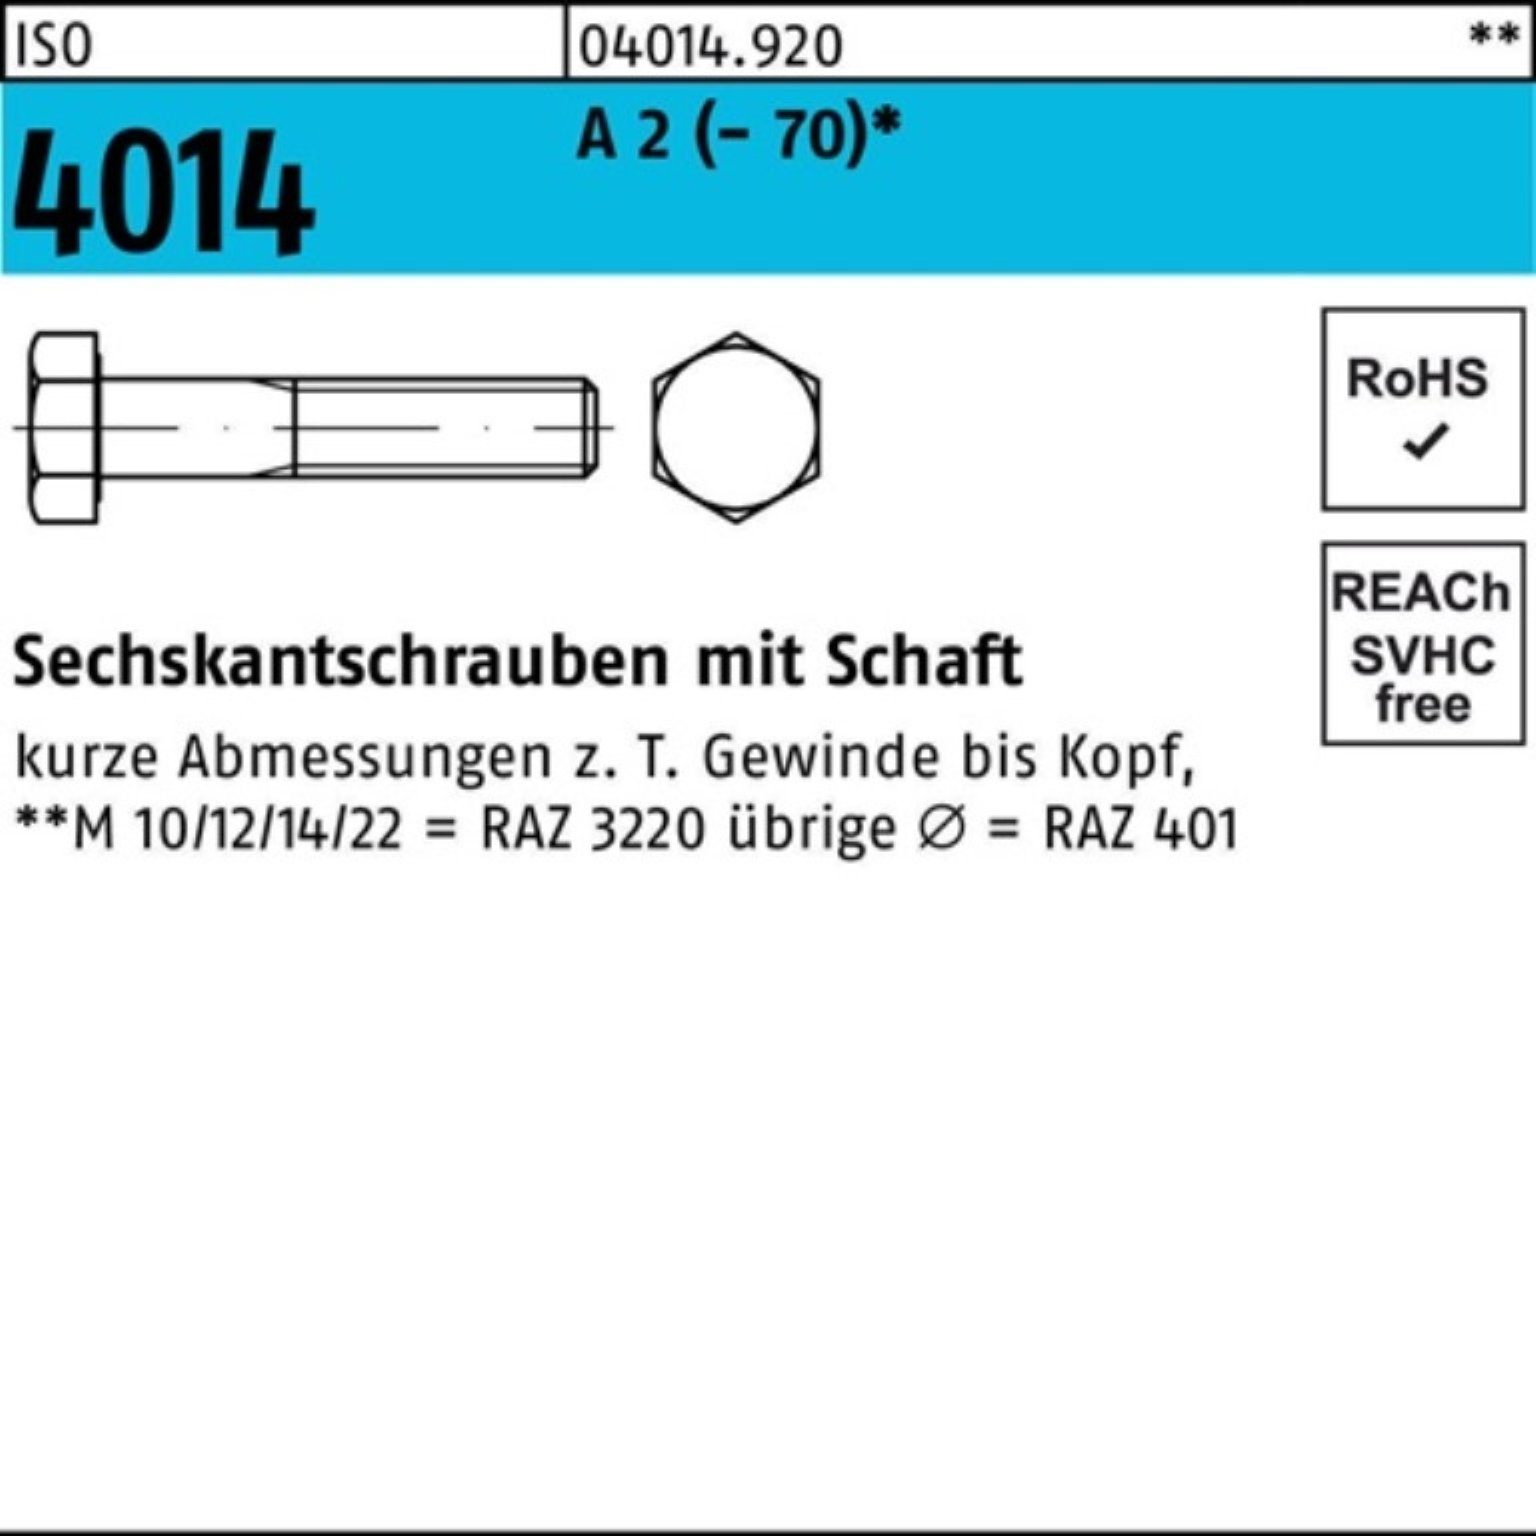 Bufab Sechskantschraube 100er Pack Sechskantschraube ISO 4014 Schaft M24x 180 A 2 (70) 1 St